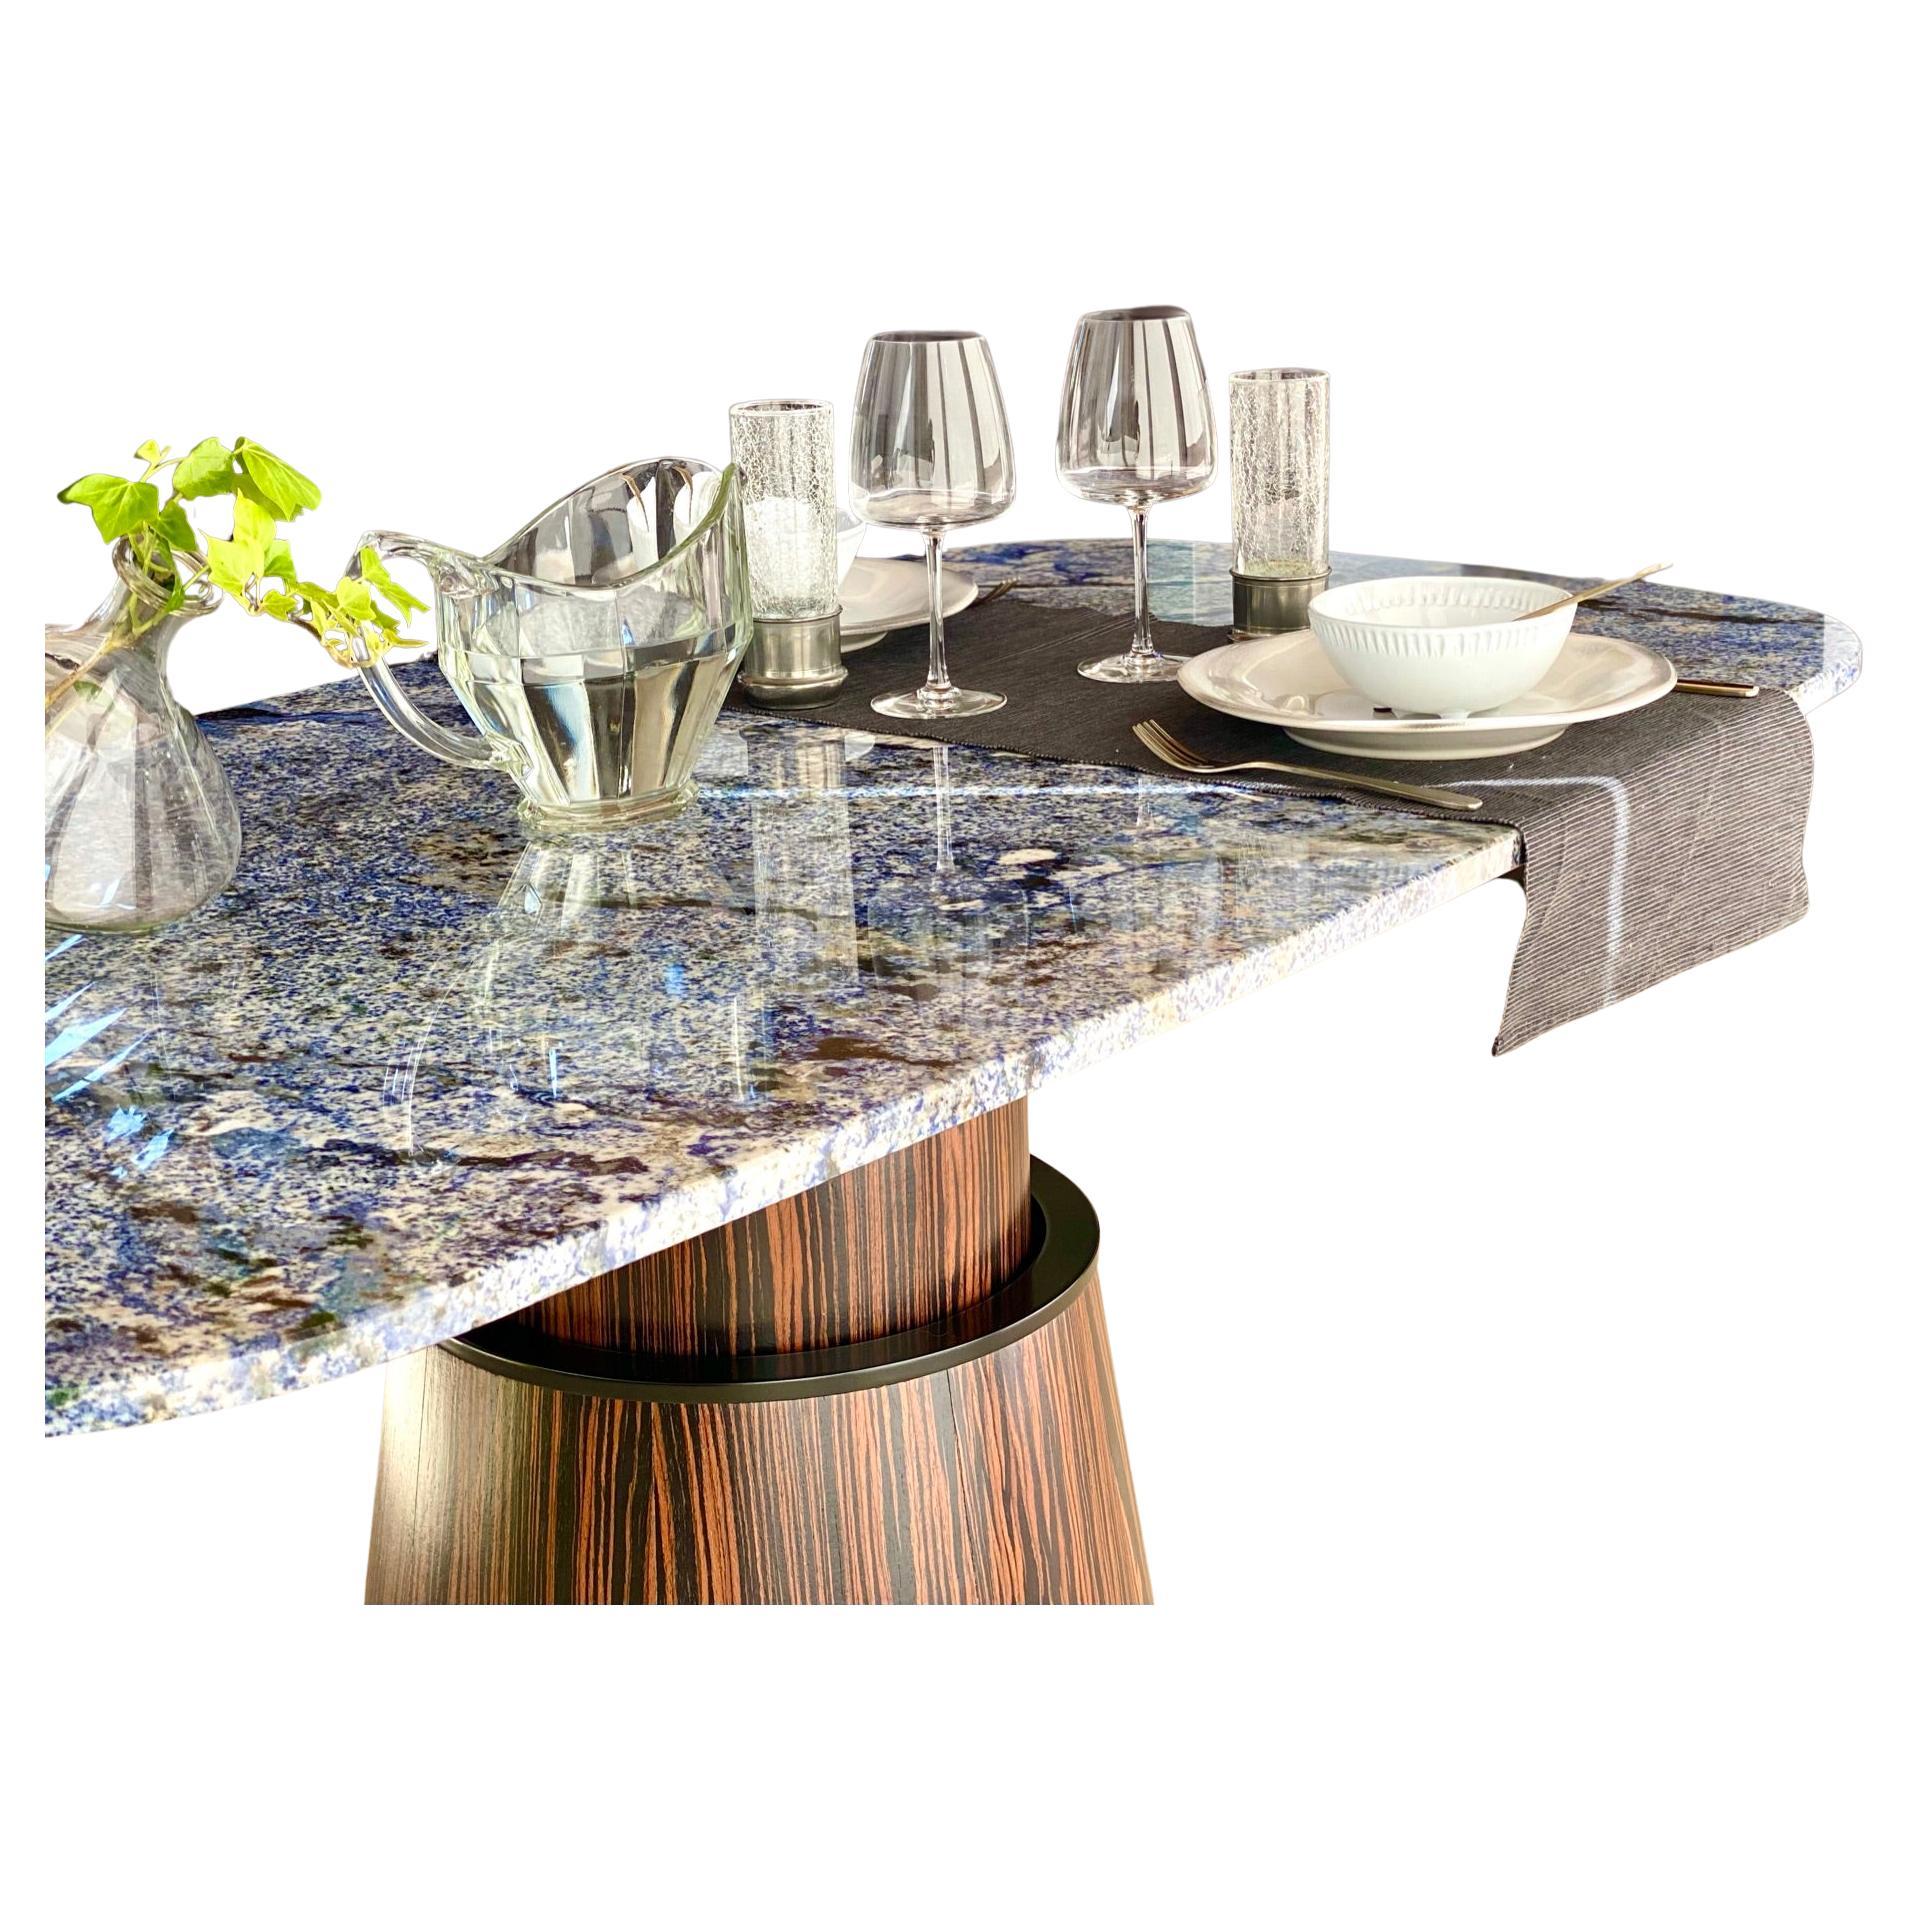 La Smart Table est une table réglable de haut en bas avec un plateau en marbre qui combine deux caractéristiques essentielles : le double usage et la technologie.

En effet, il s'agit d'une table unique réglable en hauteur qui, grâce à l'inclusion